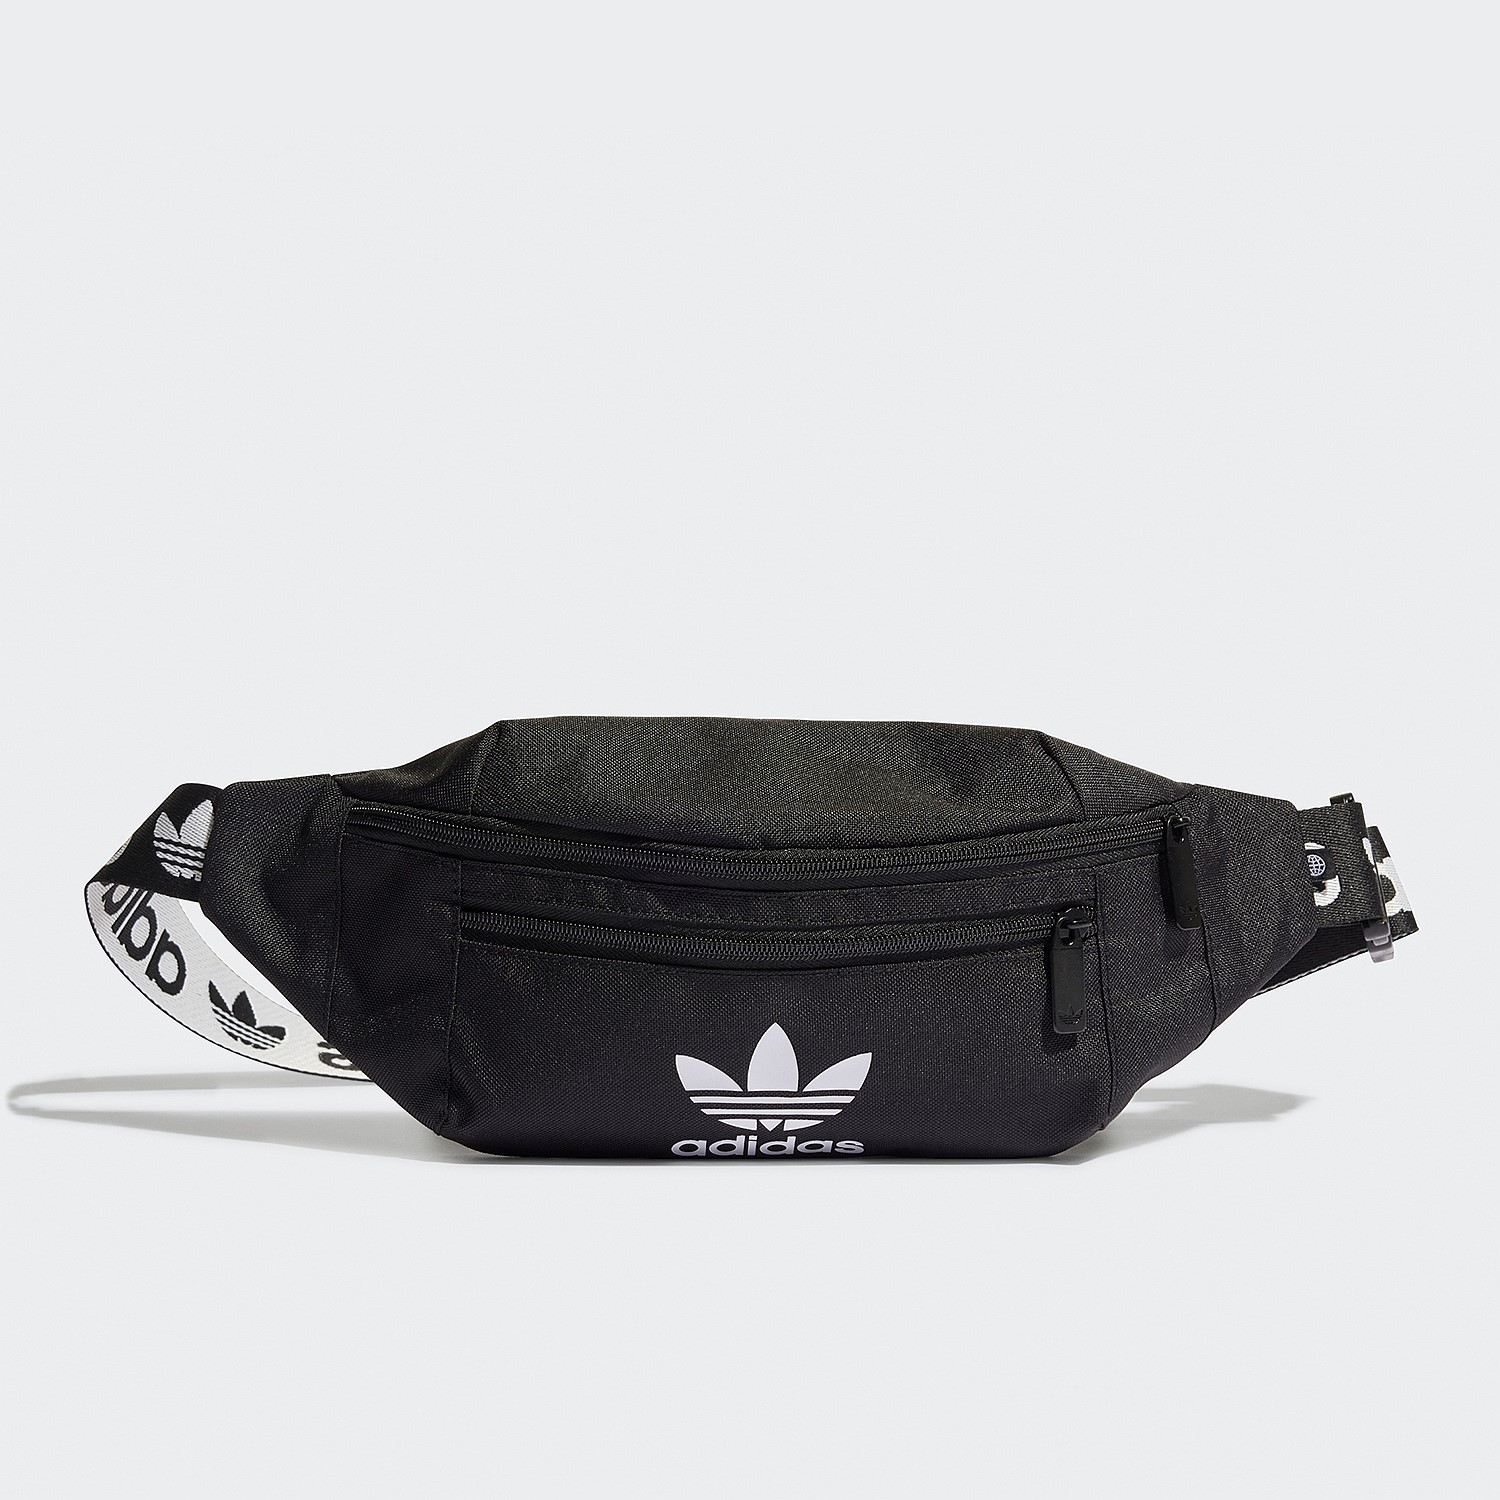 Details 74+ adidas original waist bag best - esthdonghoadian